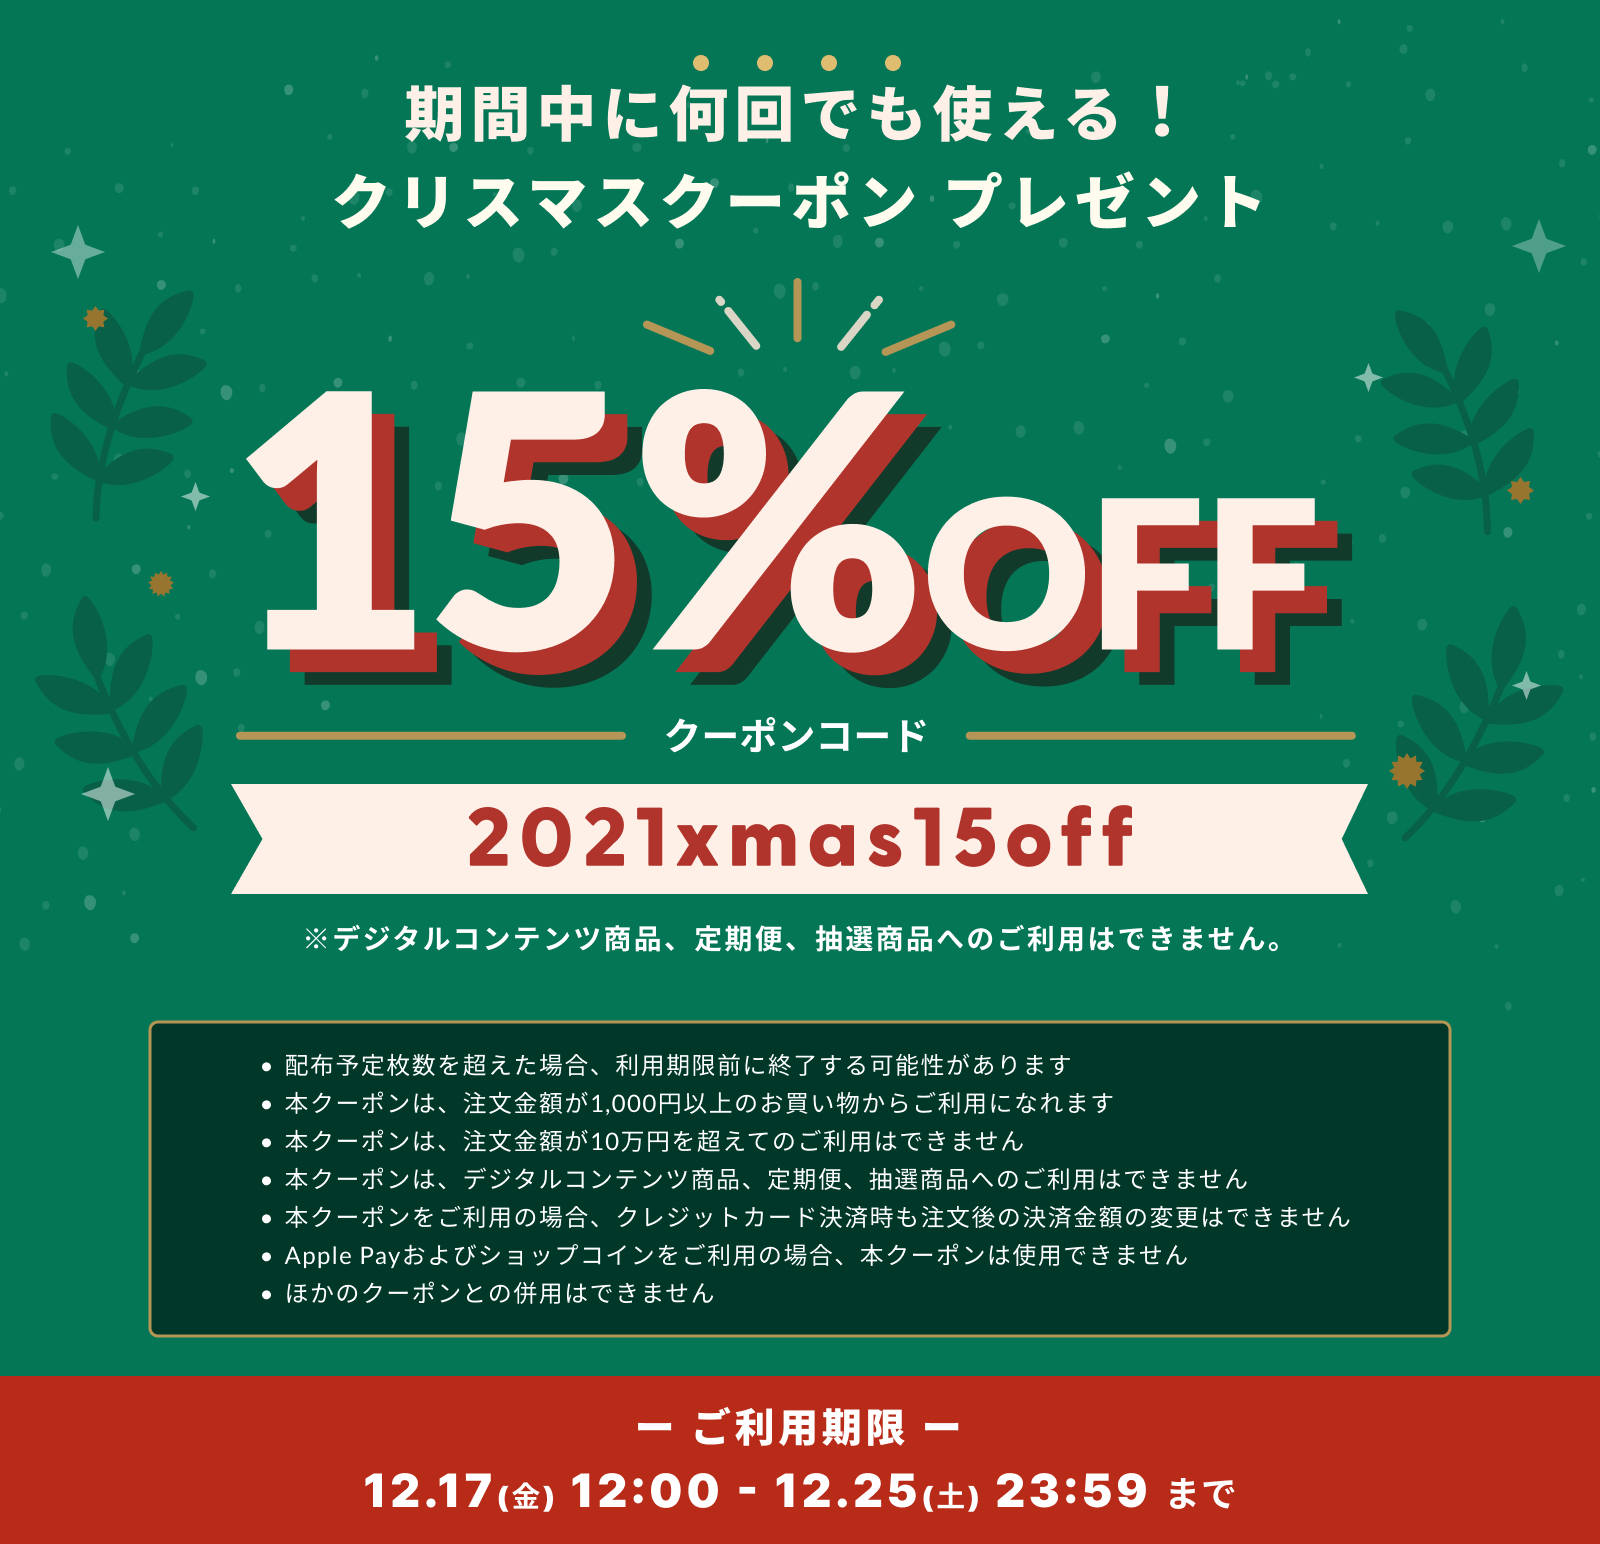 BASEより15%OFFクーポン券配布のお知らせ(〜12/25)